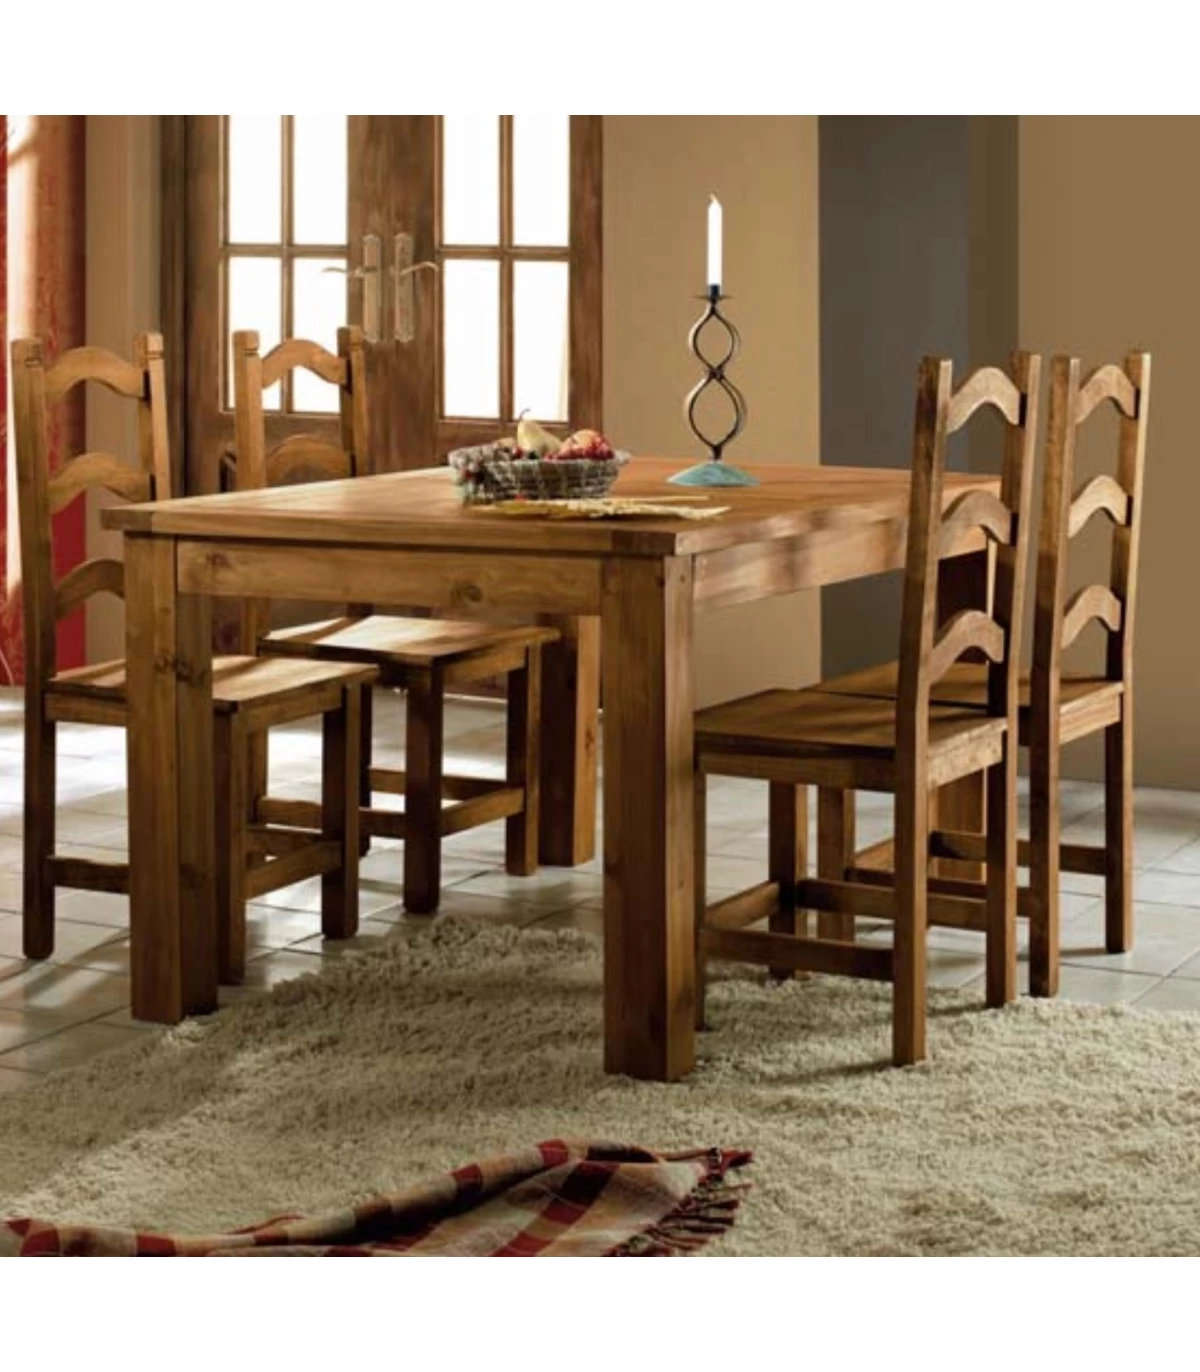 Oferta conjunto de mesa extensible con cajón y sillas de cocina